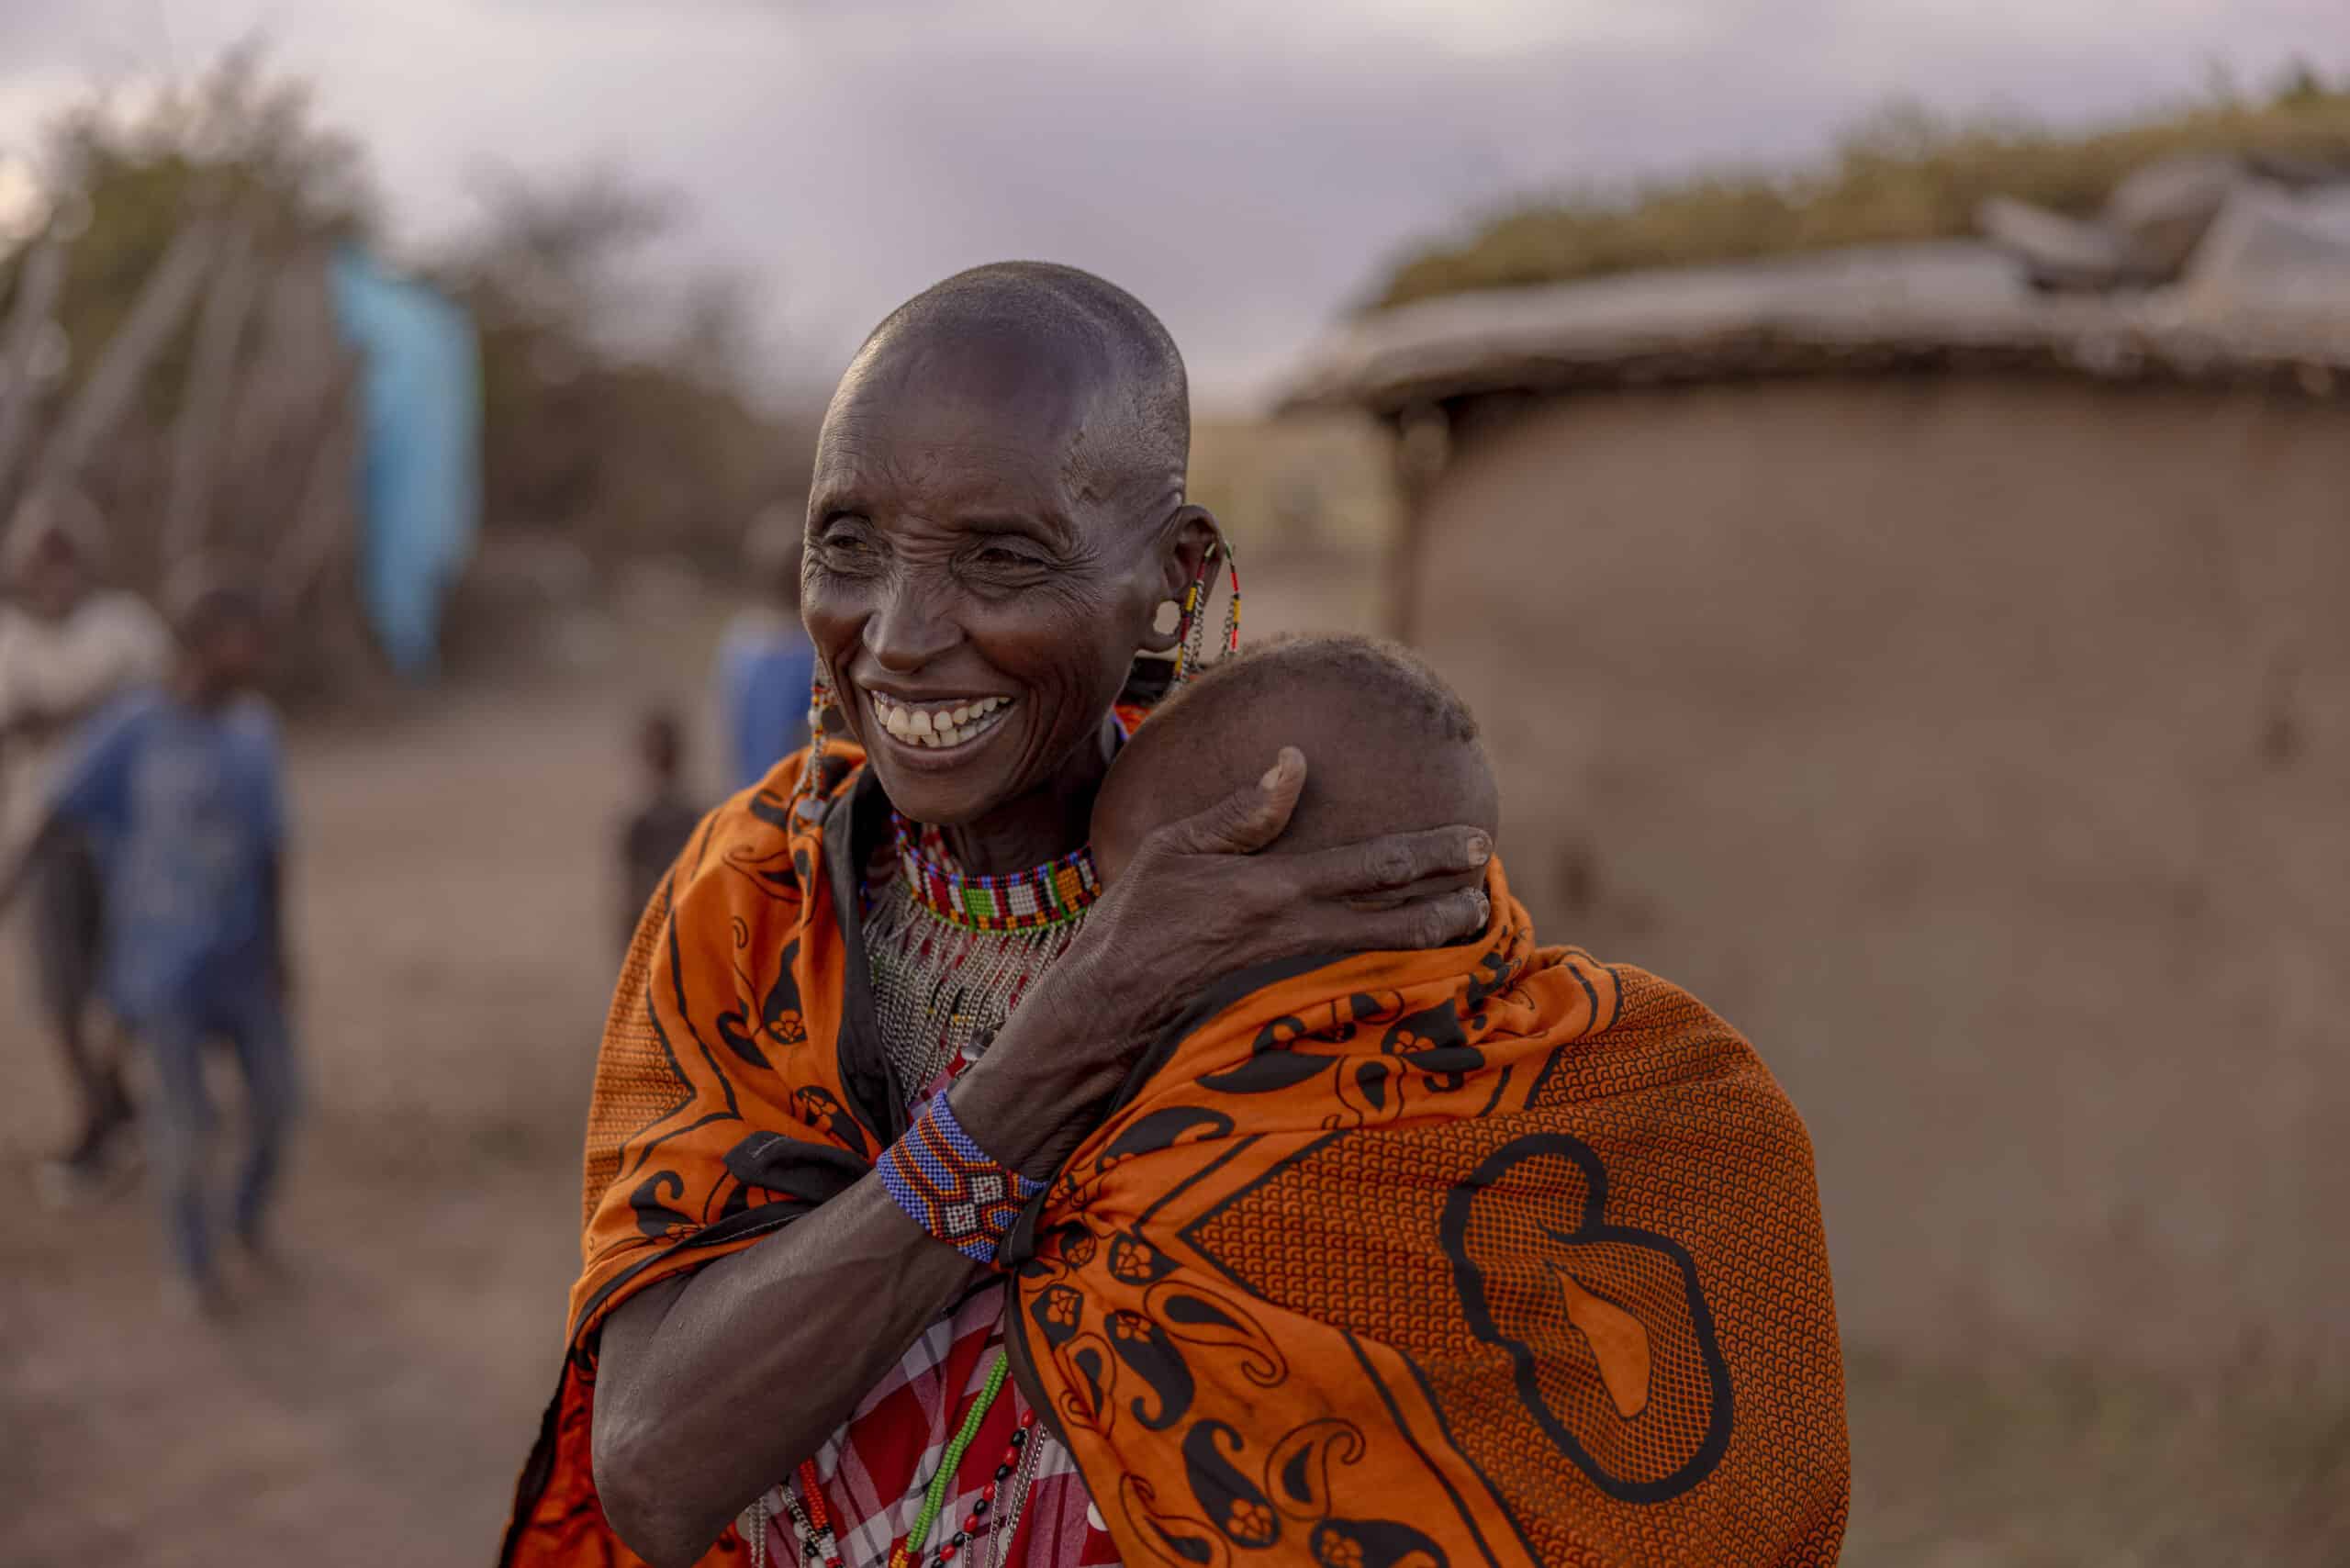 Eine ältere Frau in traditioneller Massai-Kleidung umarmt freudig ein Kind. Beide lachen in einer ländlichen Umgebung in der Nähe einer Strohhütte, im Hintergrund spielende Kinder. © Fotografie Tomas Rodriguez